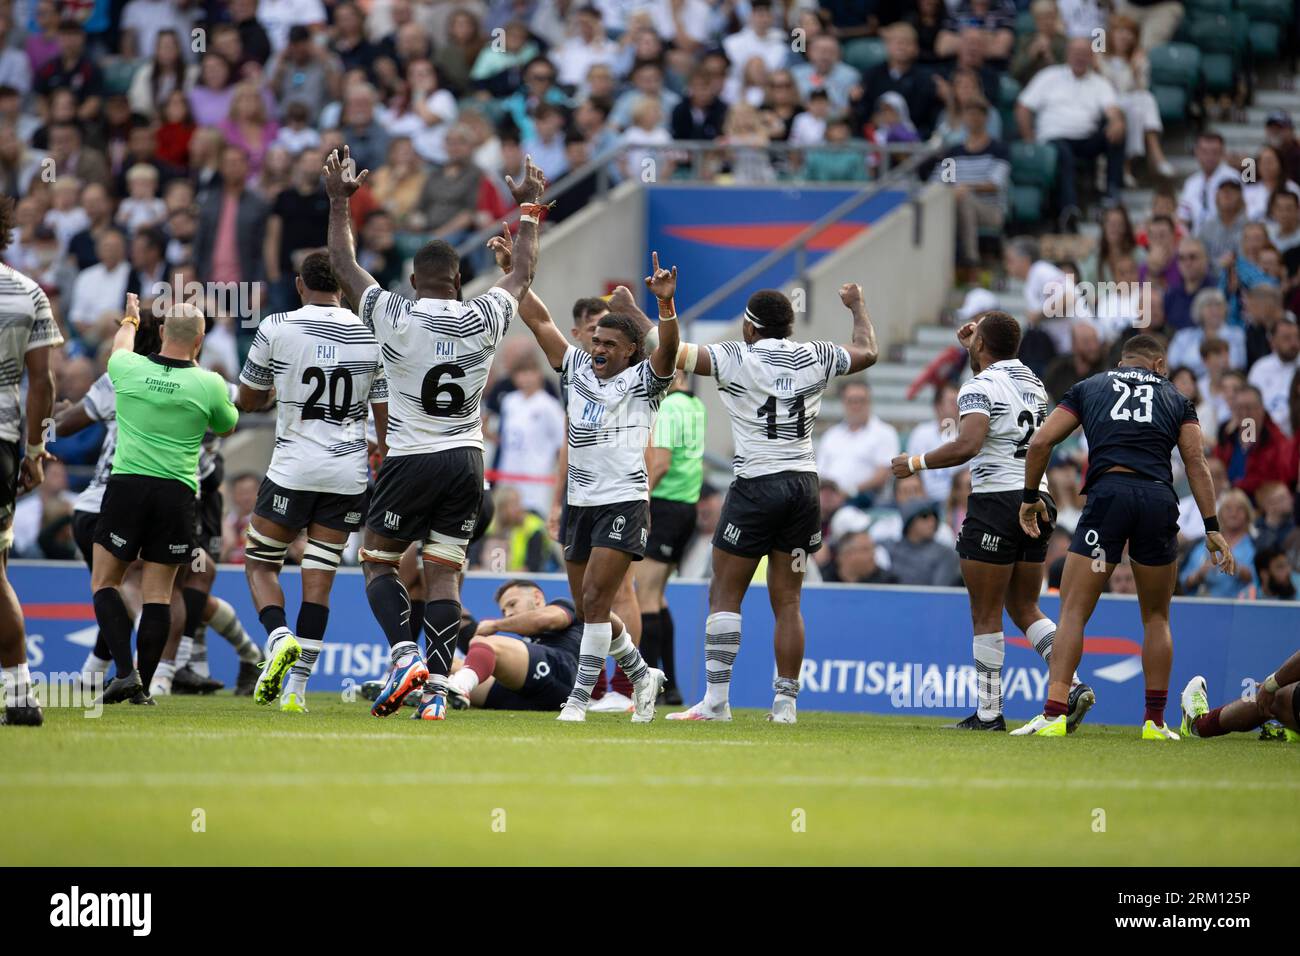 Fiji rugby immagini e fotografie stock ad alta risoluzione - Alamy